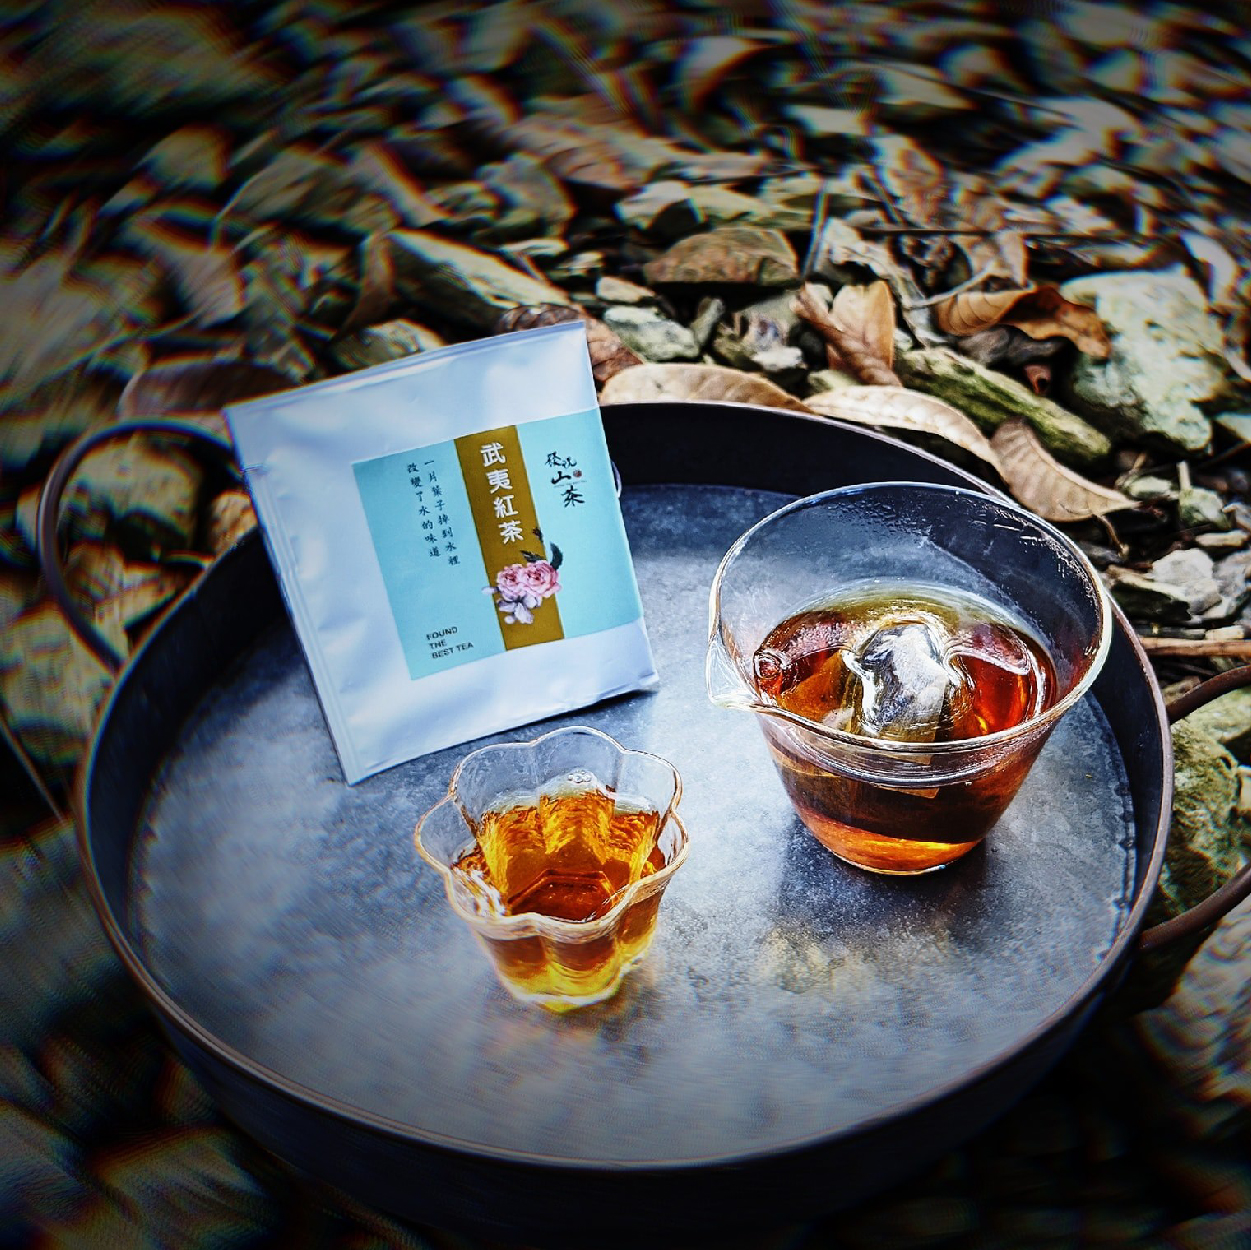 發現•山茶 六龜原生山茶 茶湯柔順多層次風味